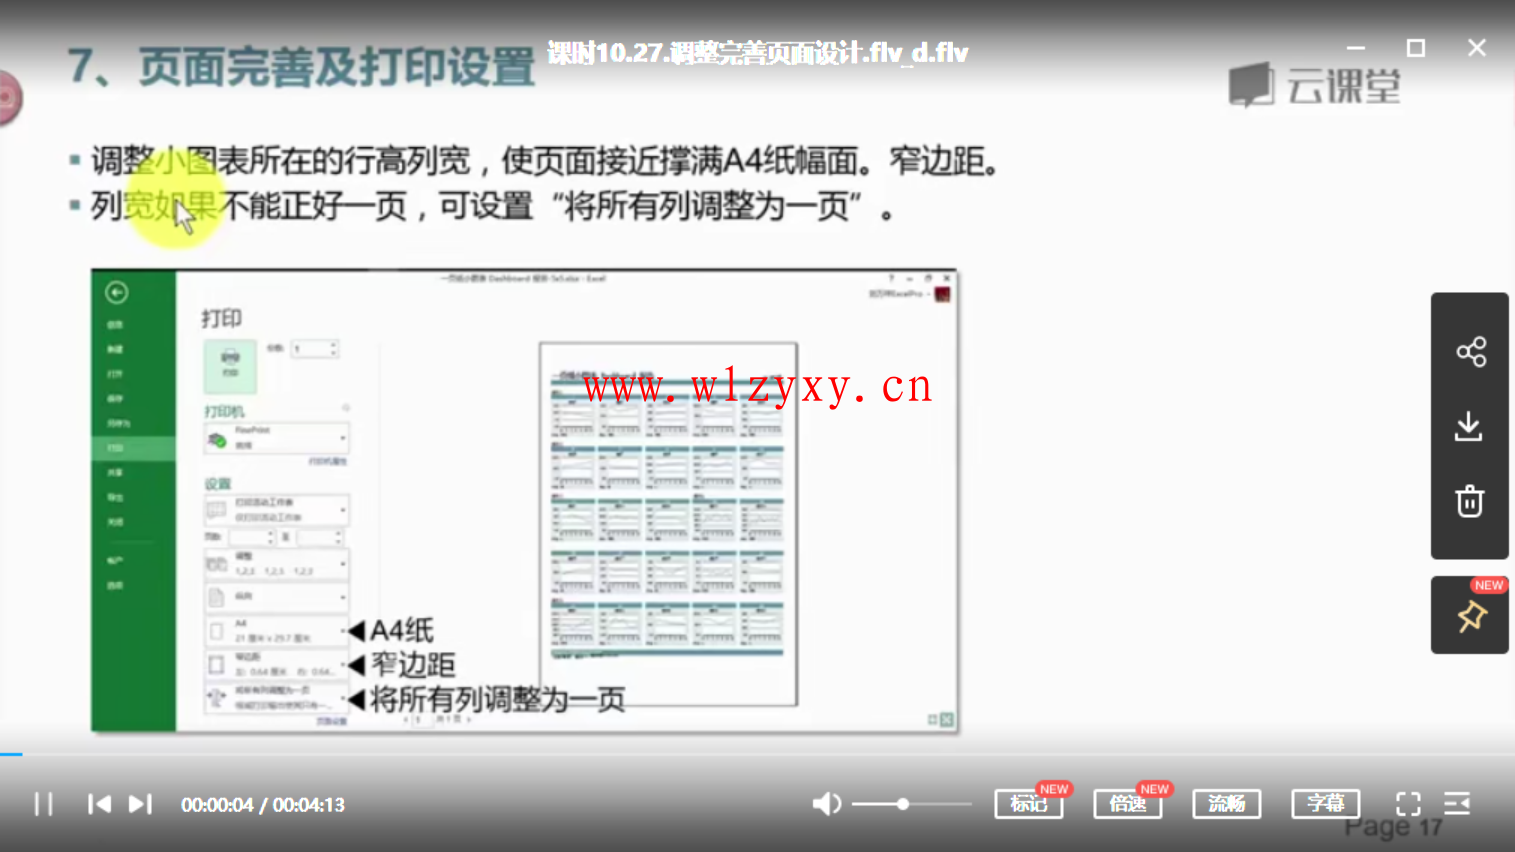 刘万祥 一页纸仪表板报告（全）1.png